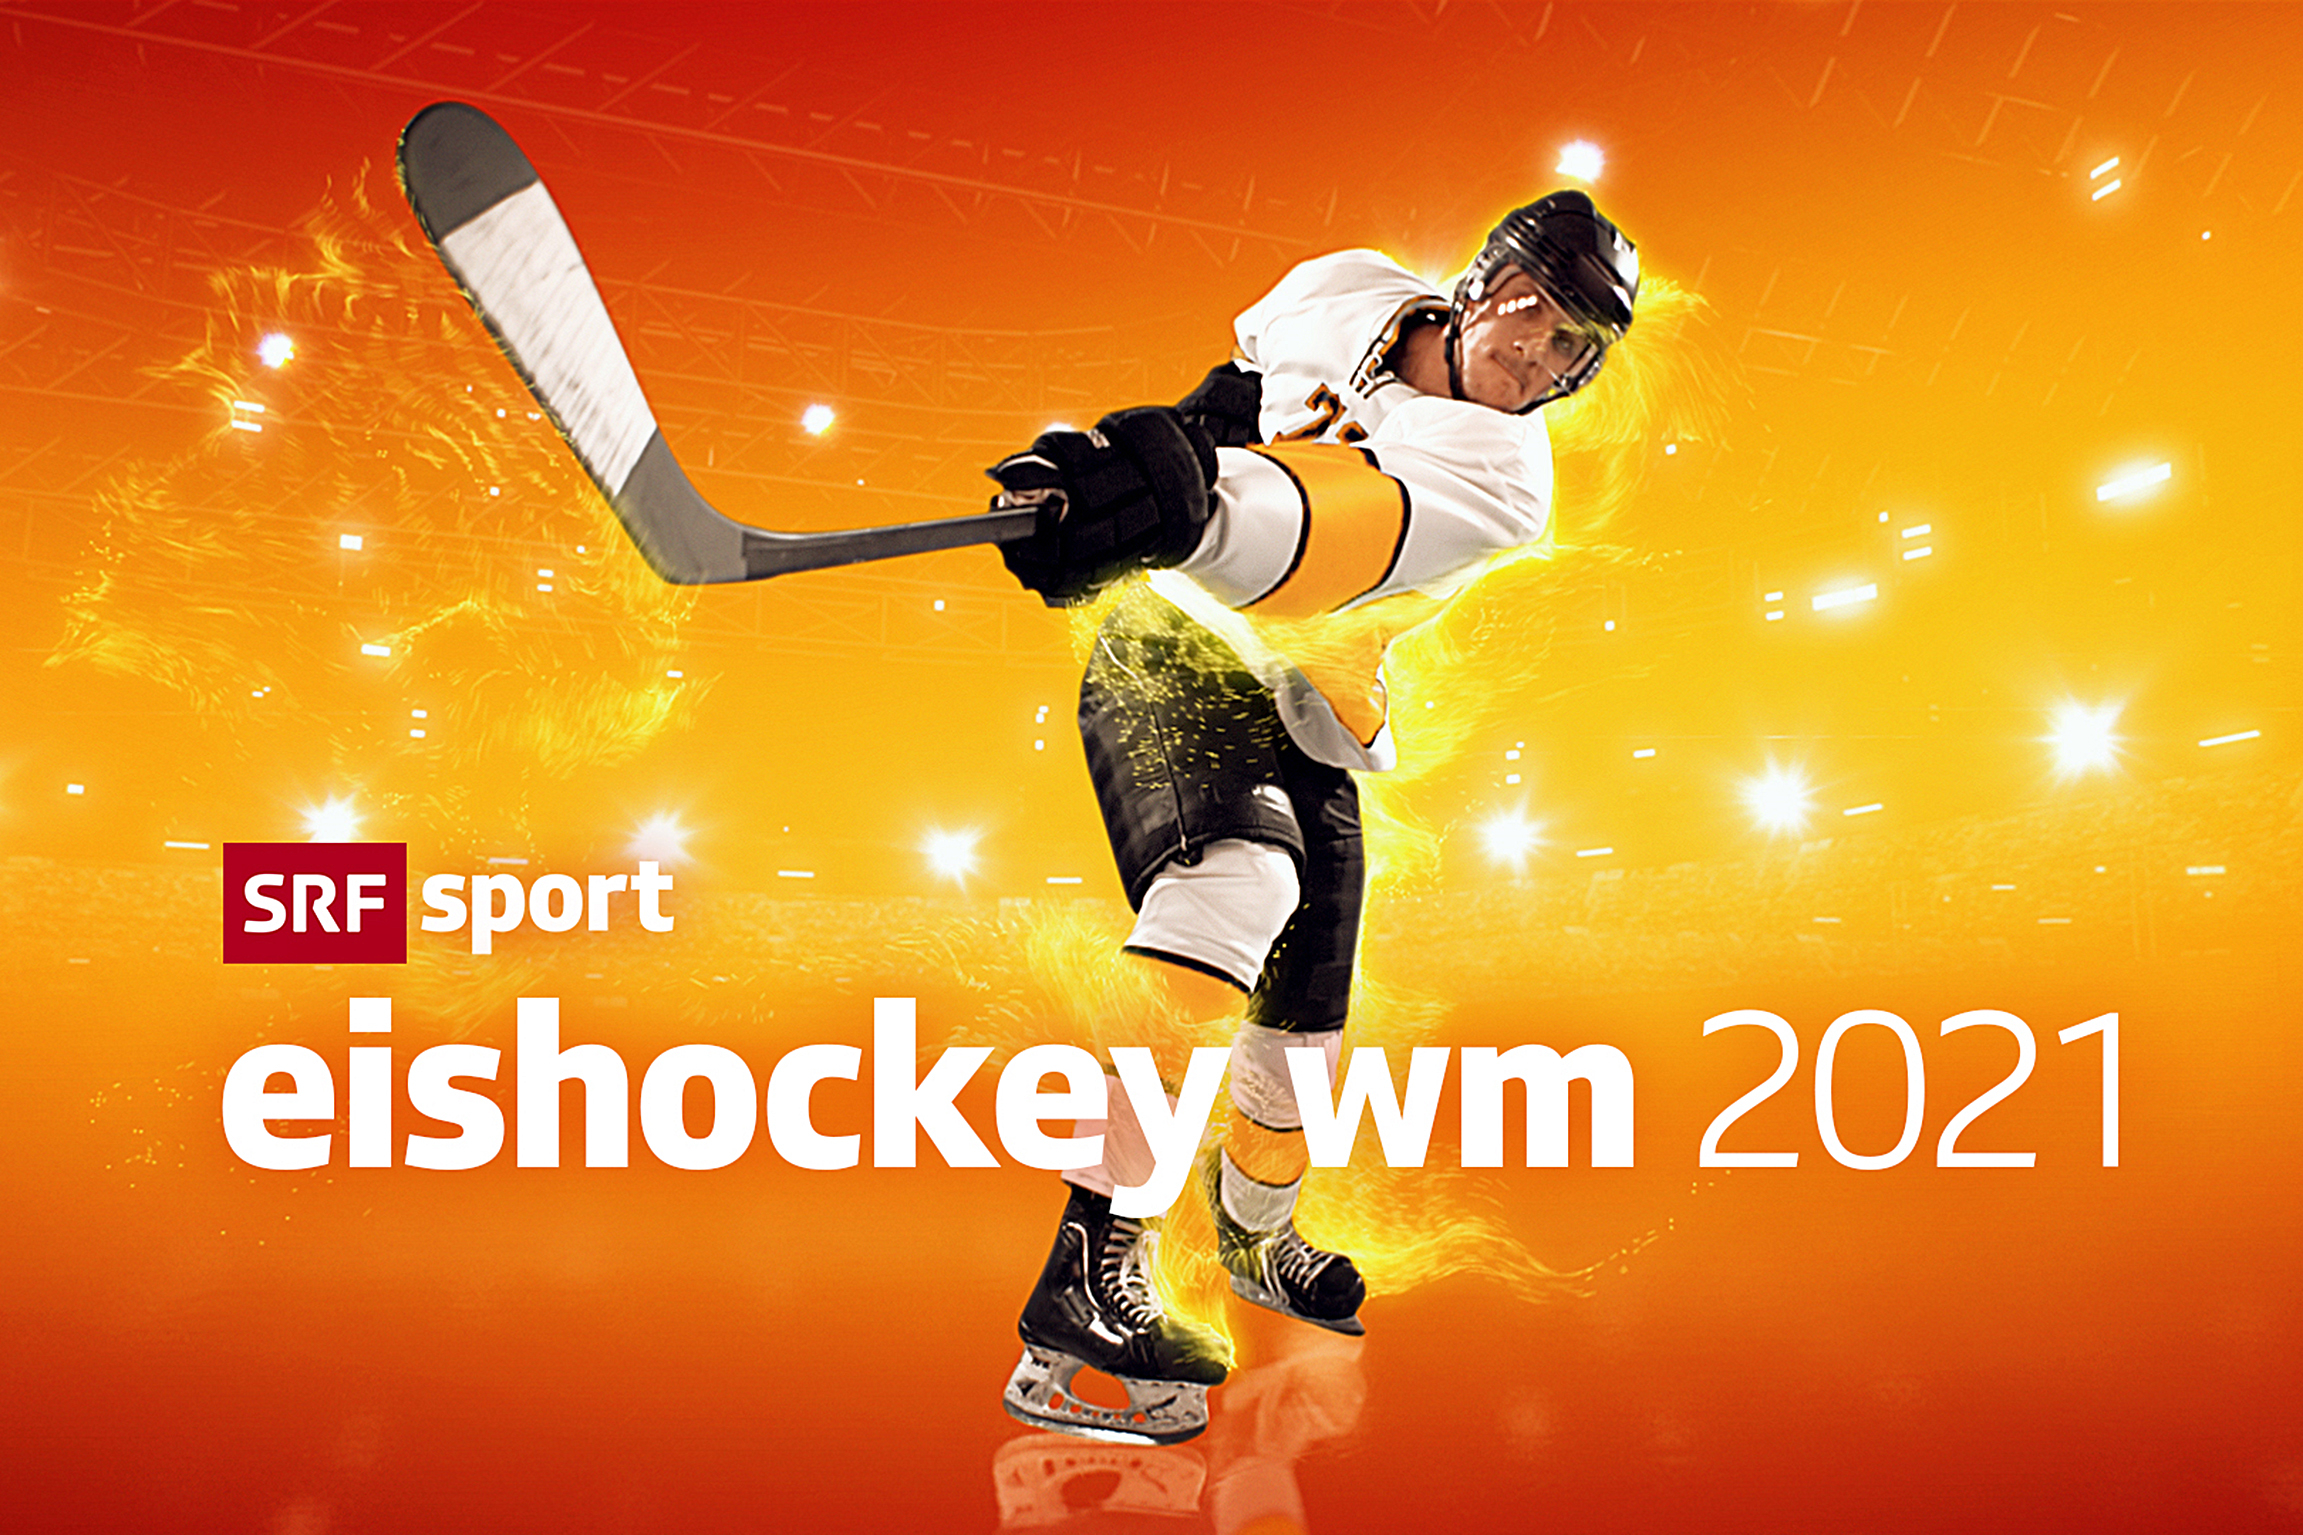 Eishockey-WM 2021 SRF mit ausgebauter Berichterstattung - Medienportal